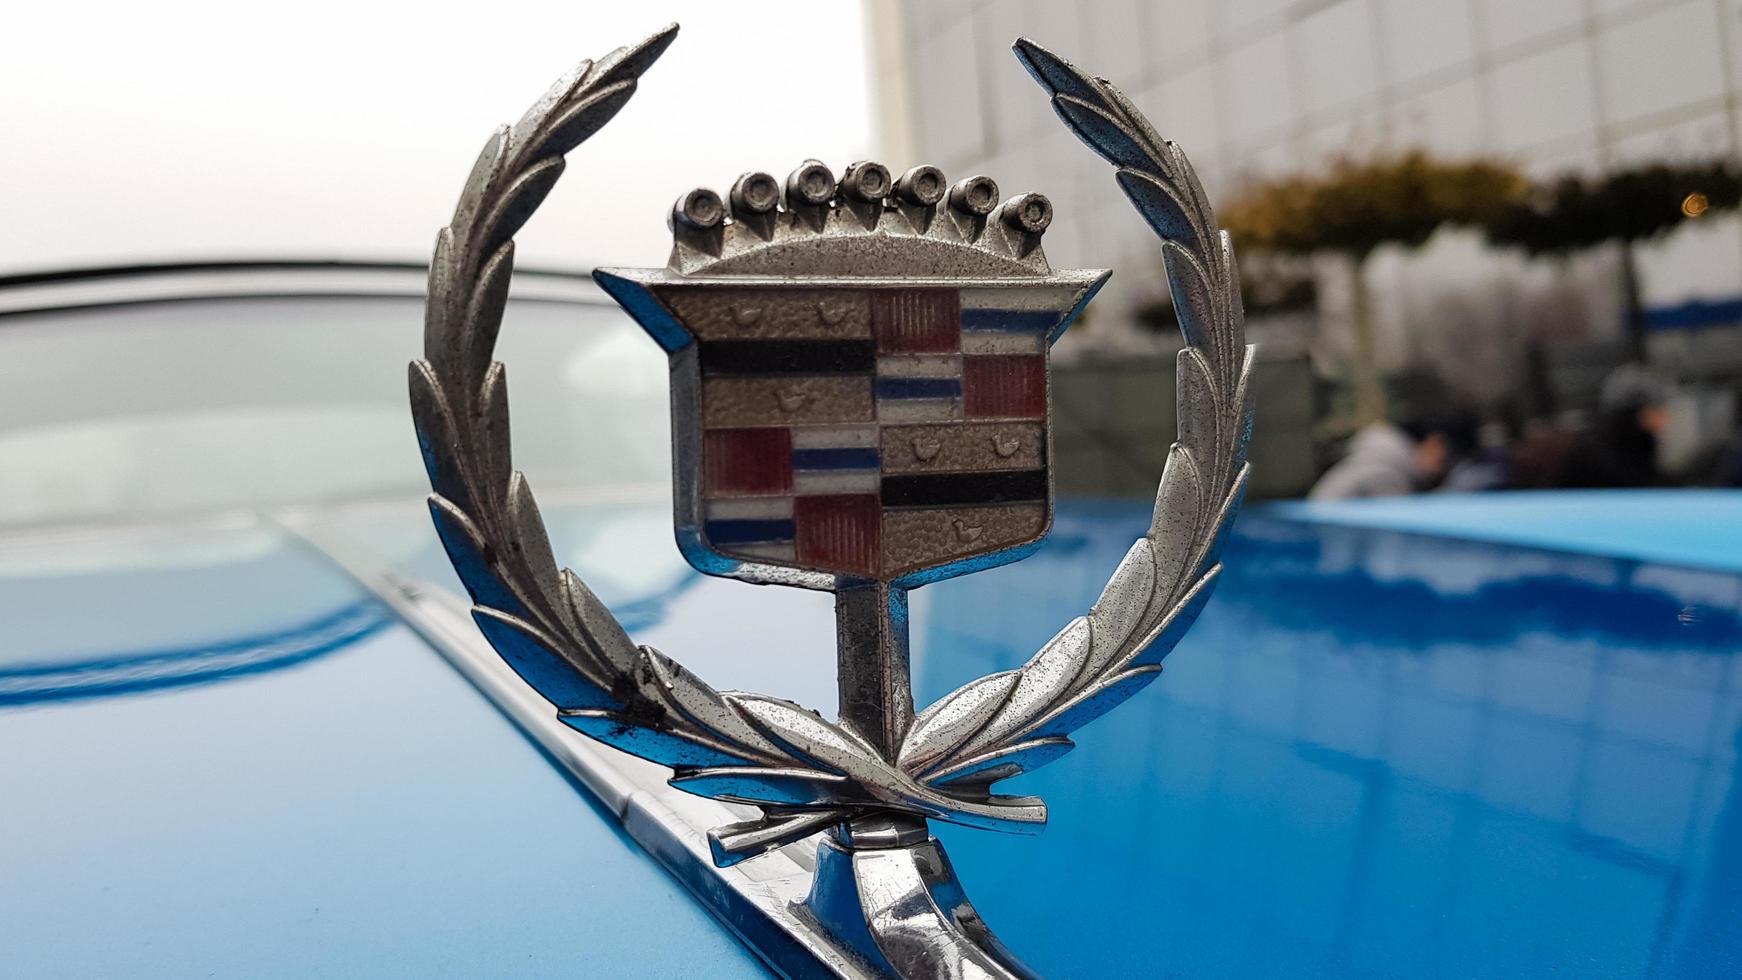 ukraine, kiev - 27 mars 2020. voiture classique rétro vintage cadillac beatriz de couleur bleue. emblème sur la capuche avec un logo. pièces d'origine de la voiture américaine restaurée. photos sous différents angles.